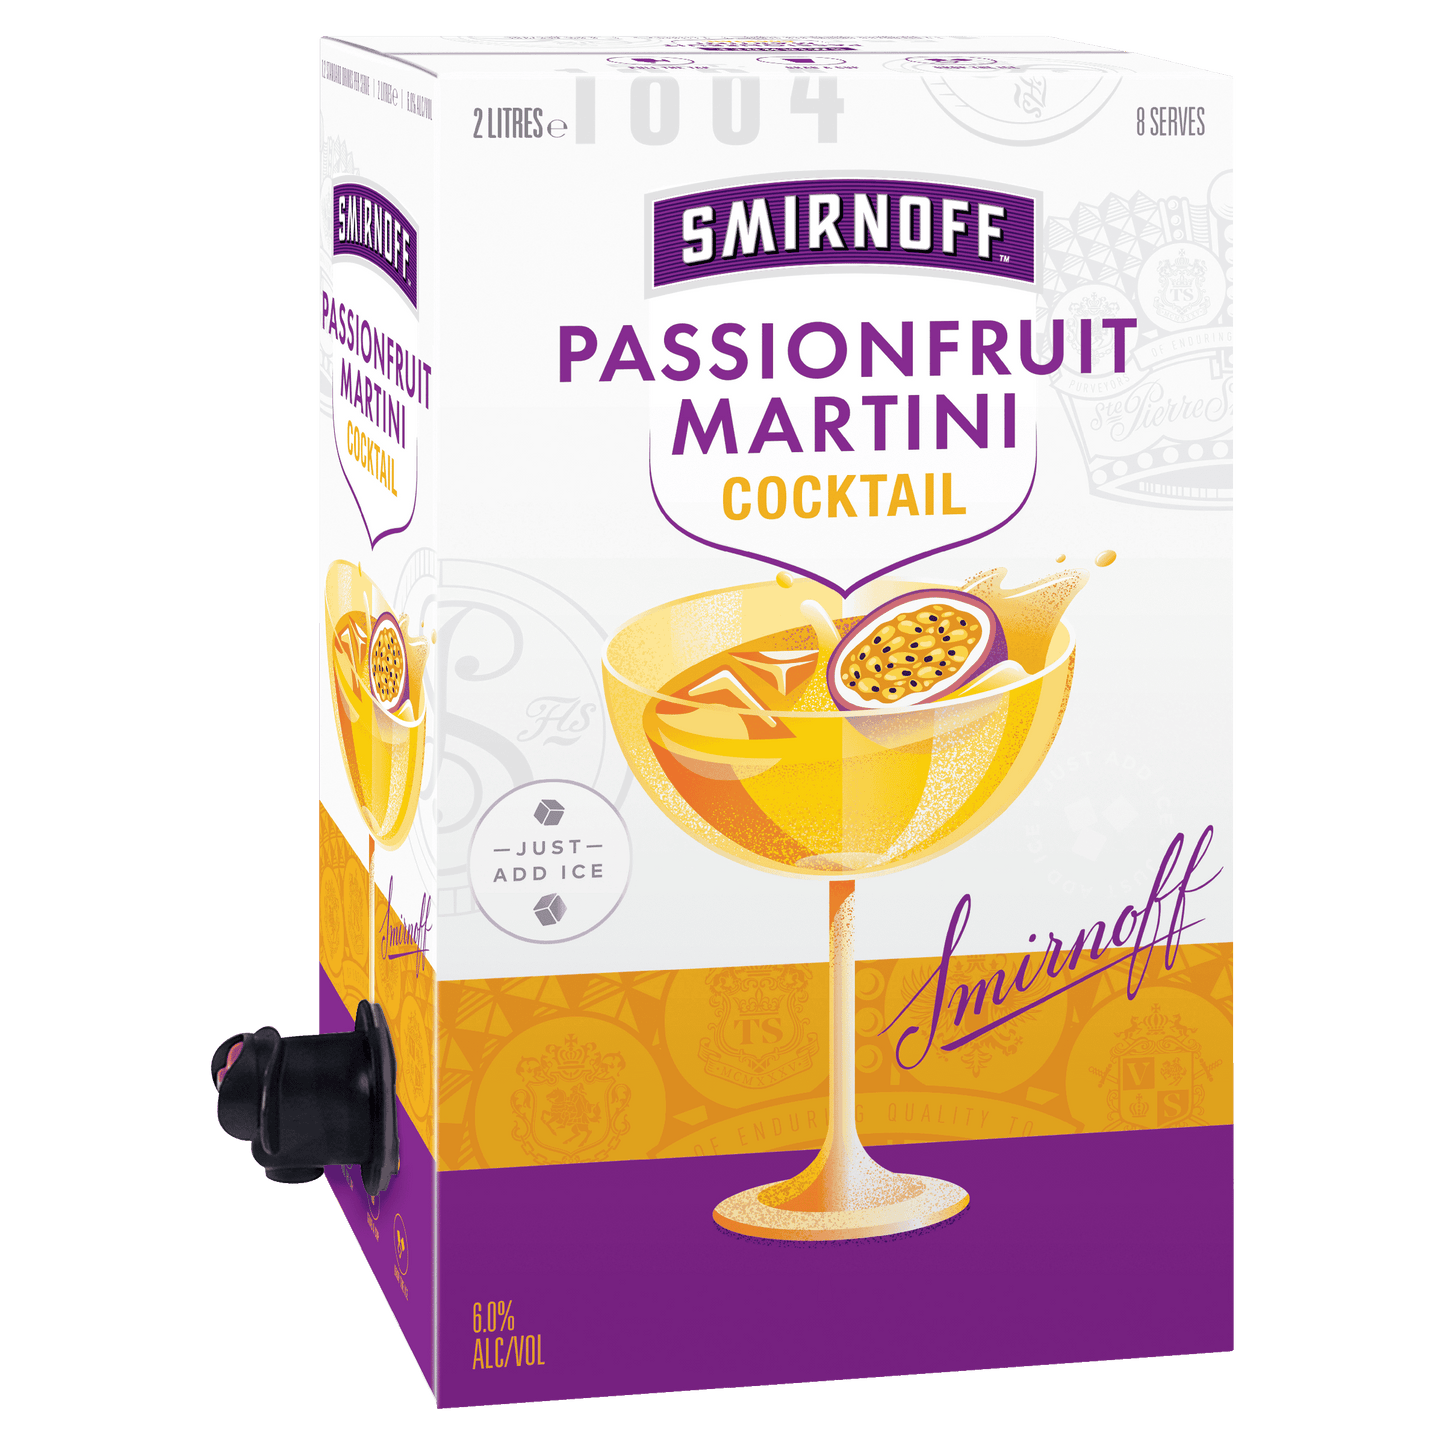 Smirnoff Passionfruit Martini Cocktail